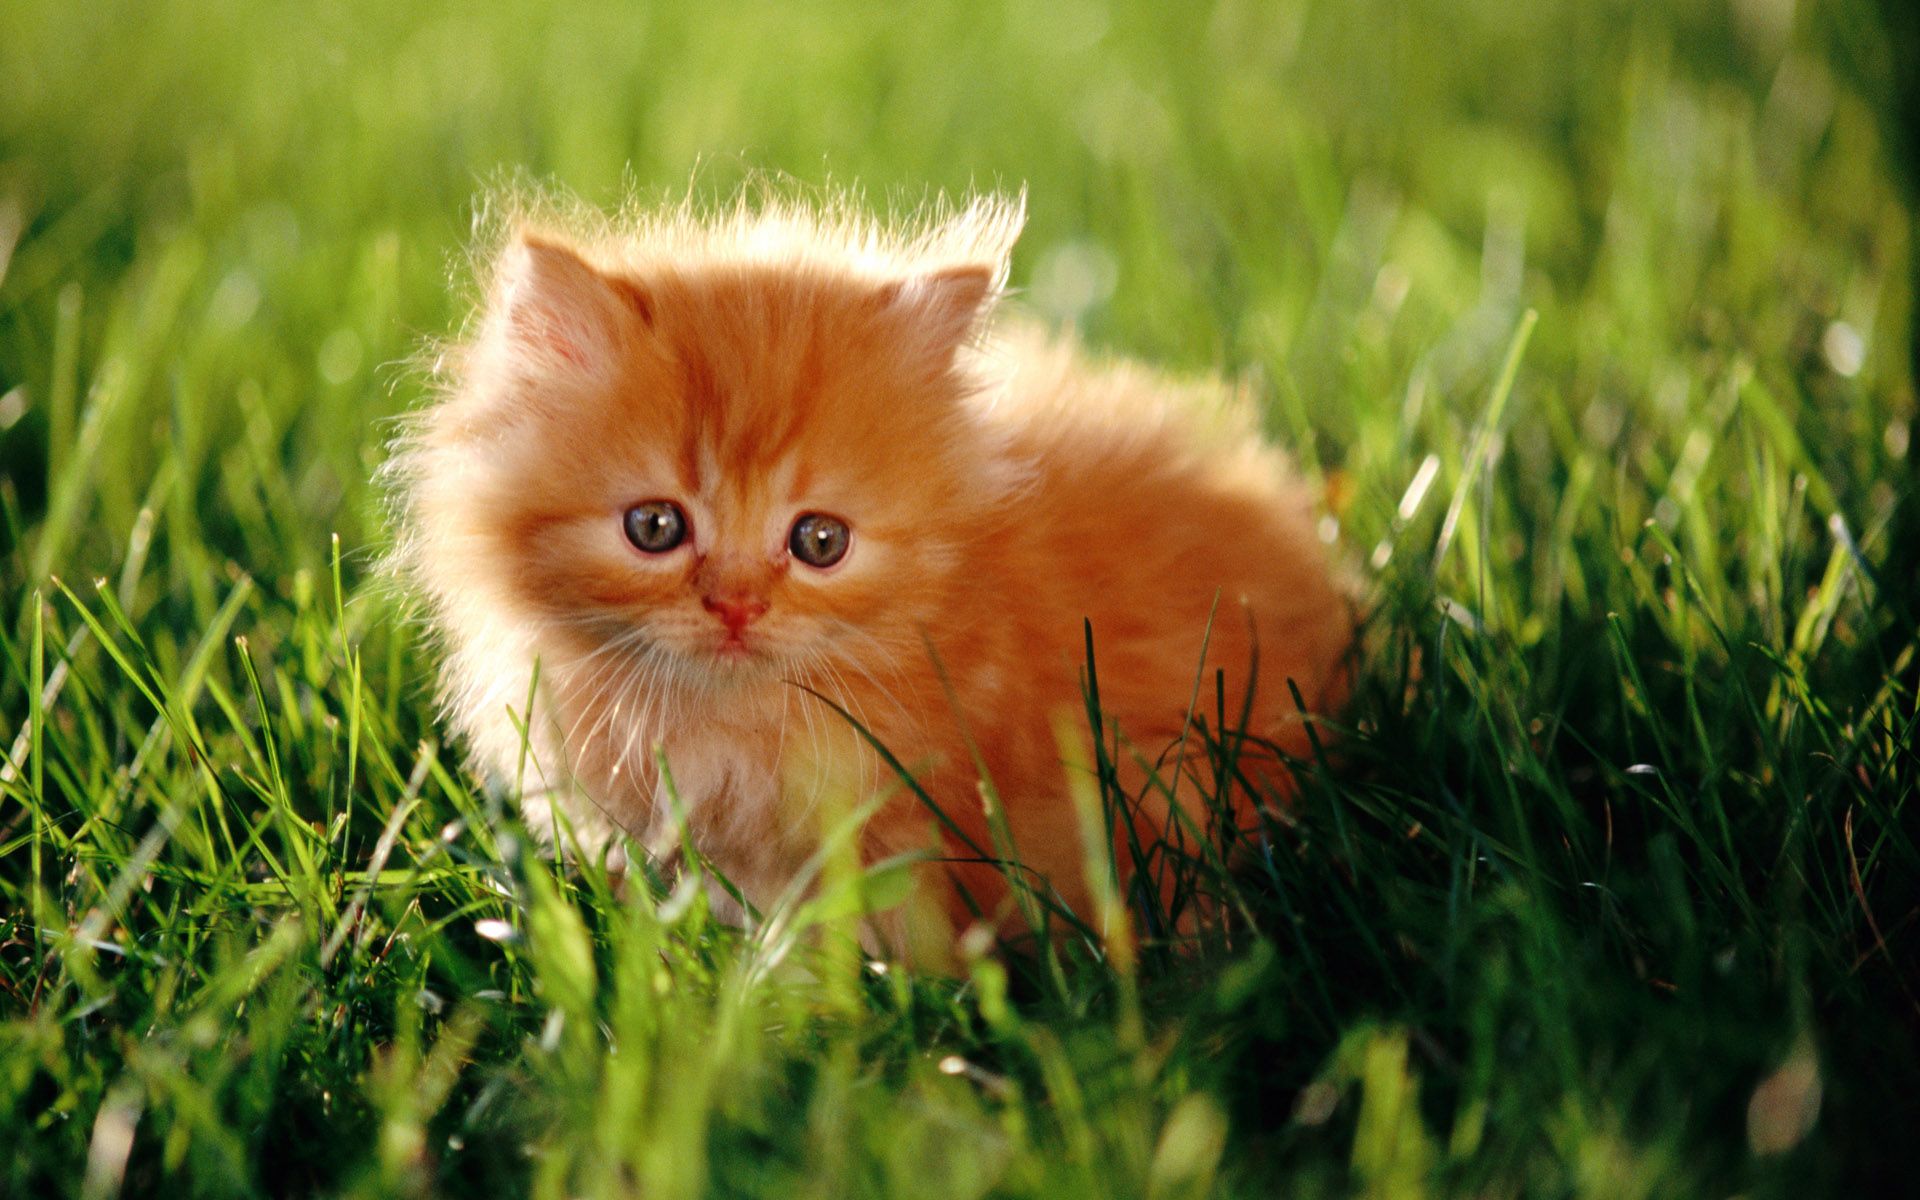 تصویر بامزه بچه گربه ایرانی در طبیعت سبز 1402